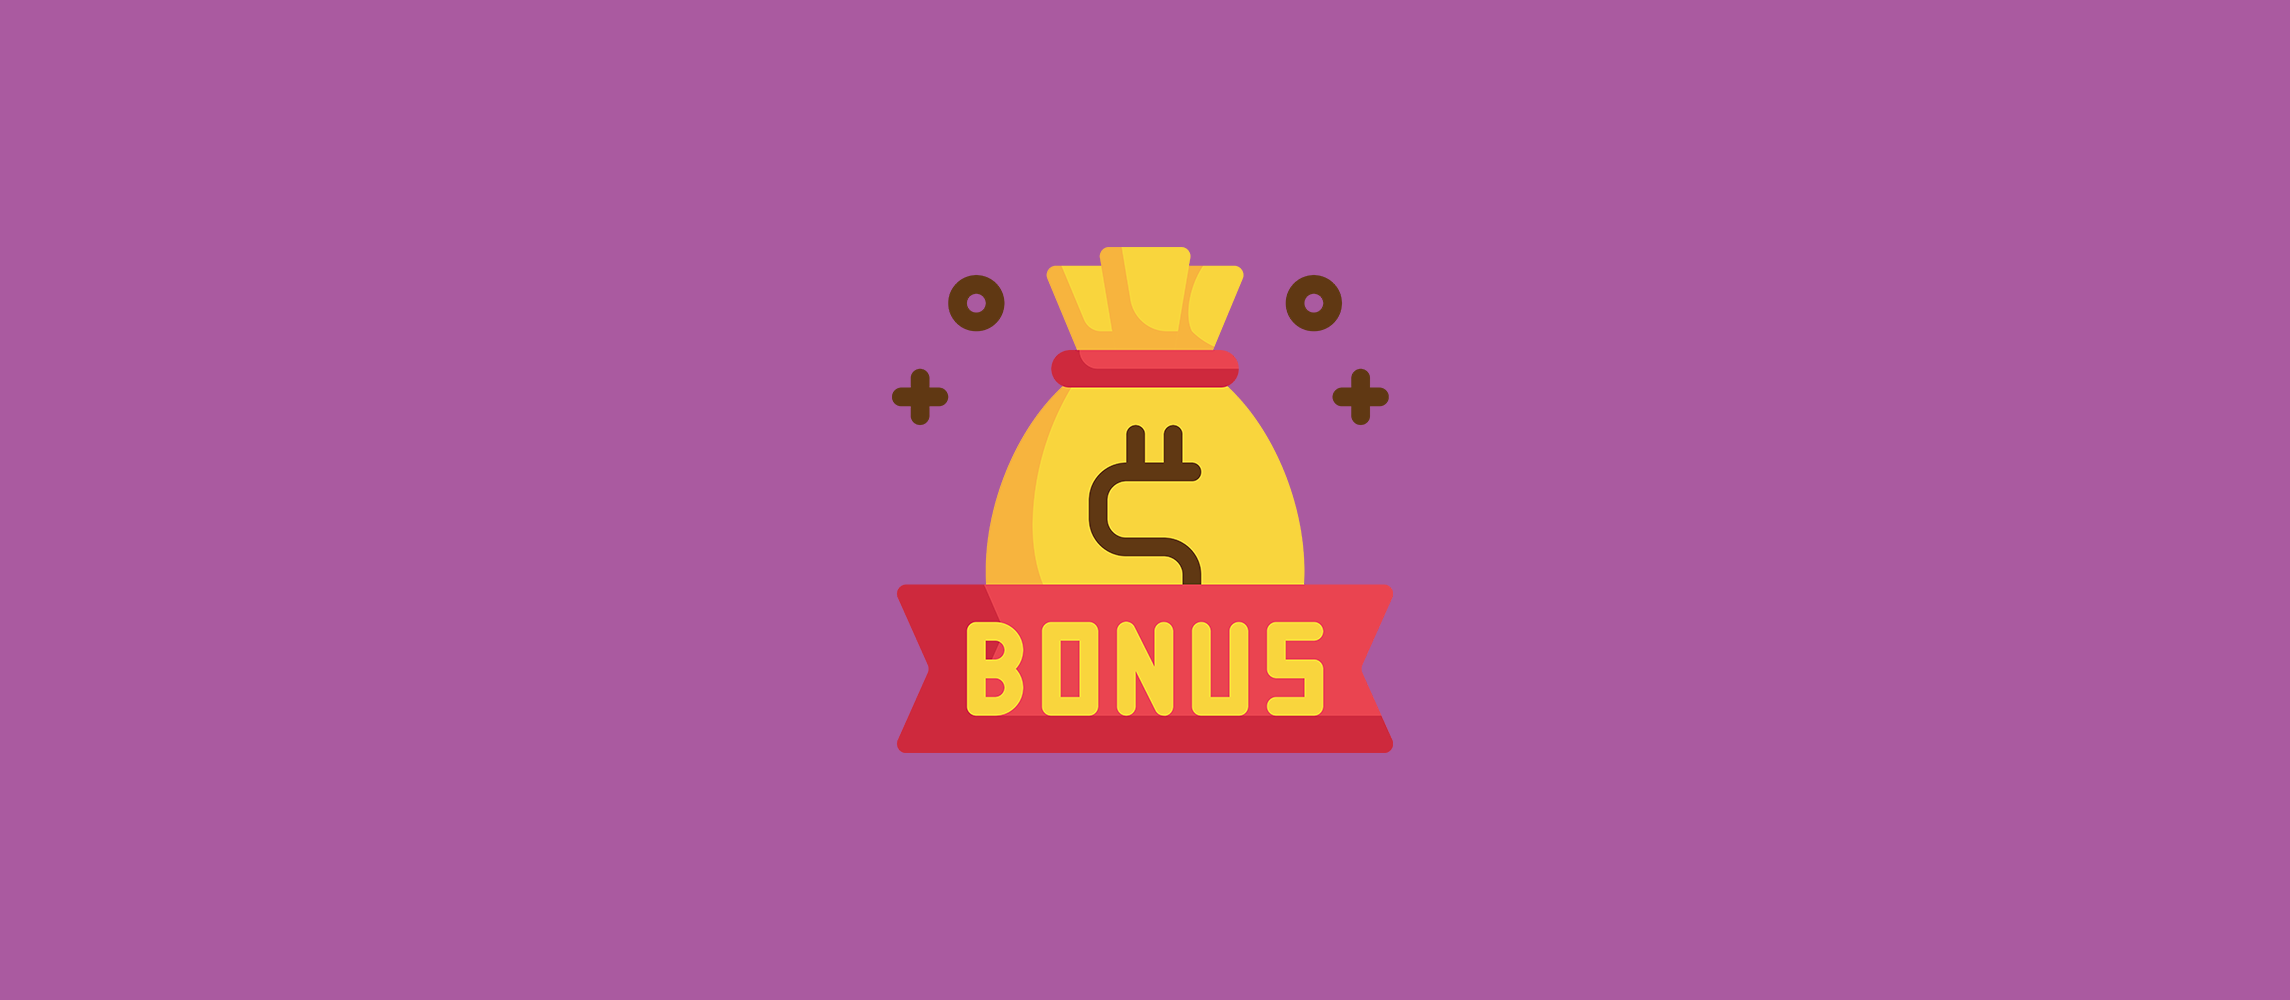 pokerstars bonus primeiro deposito